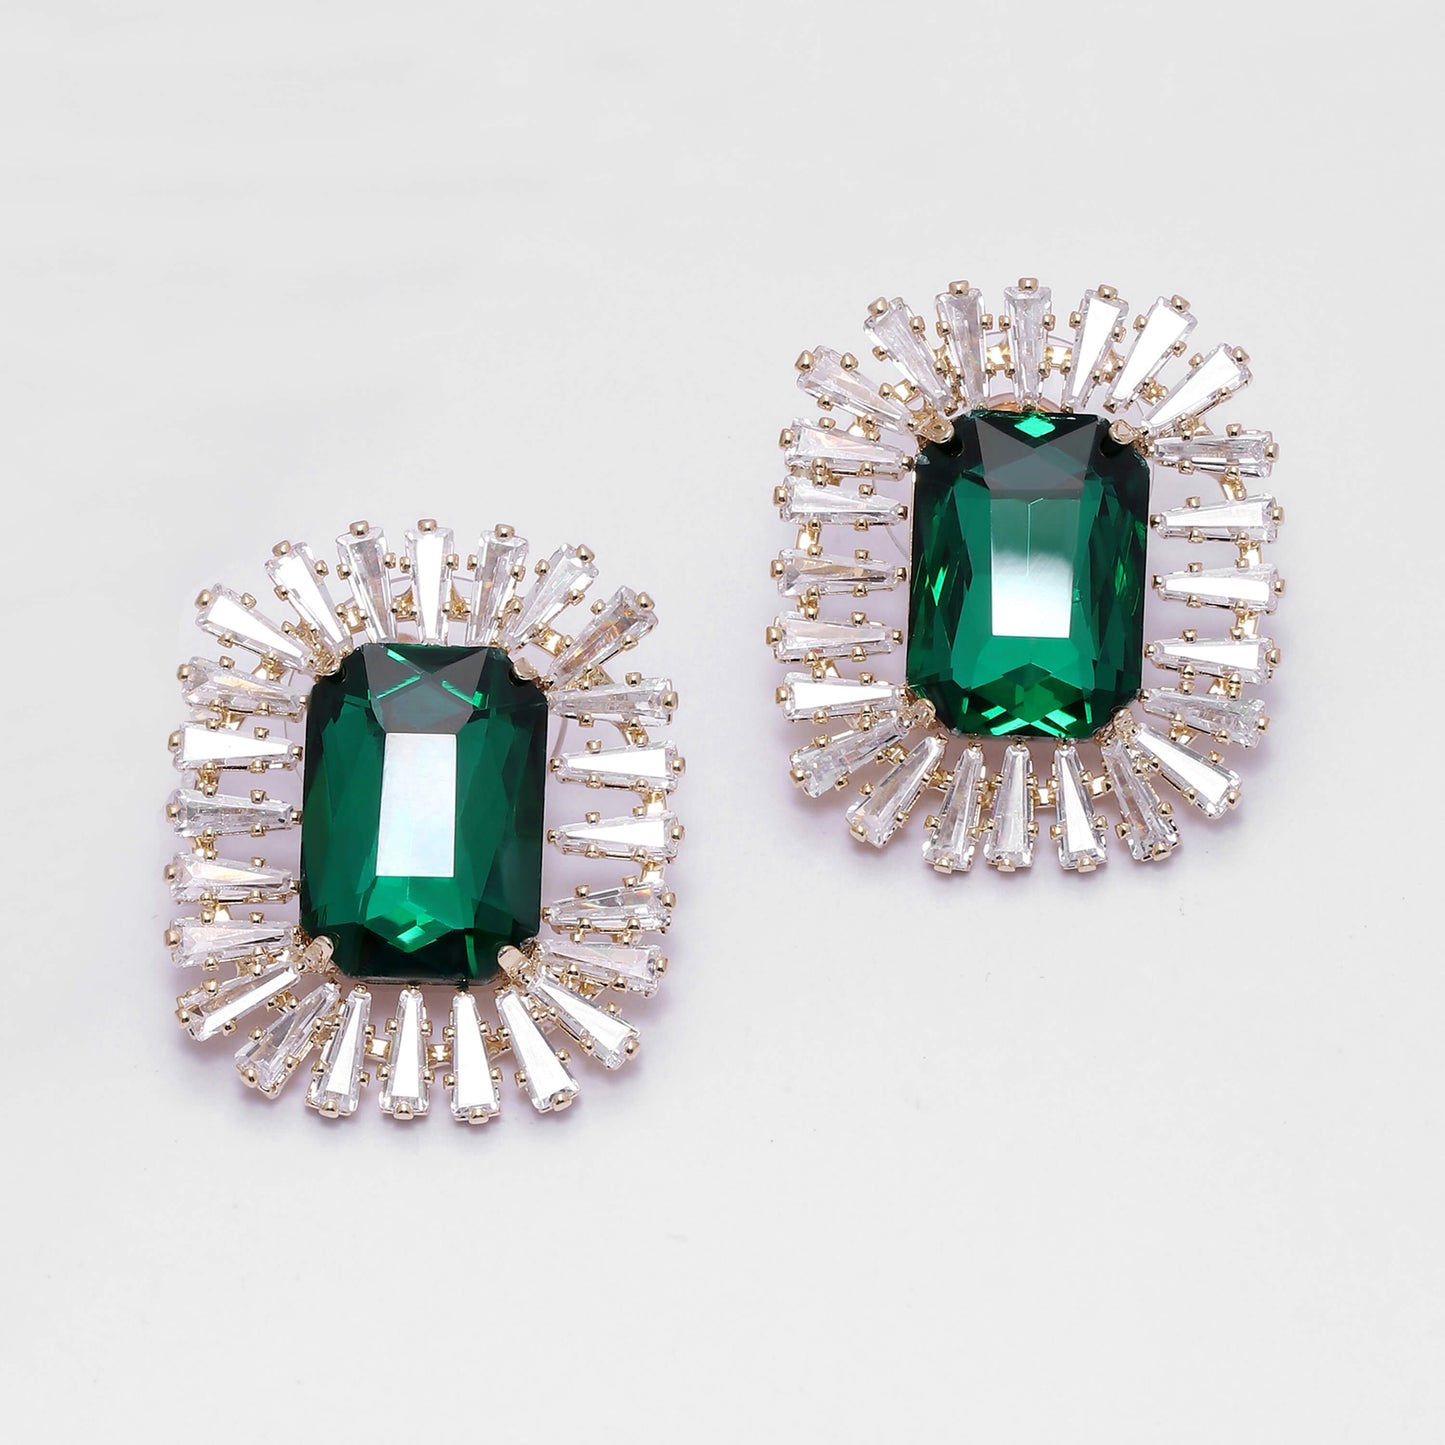 Emerald Green Zircon Stud Earrings